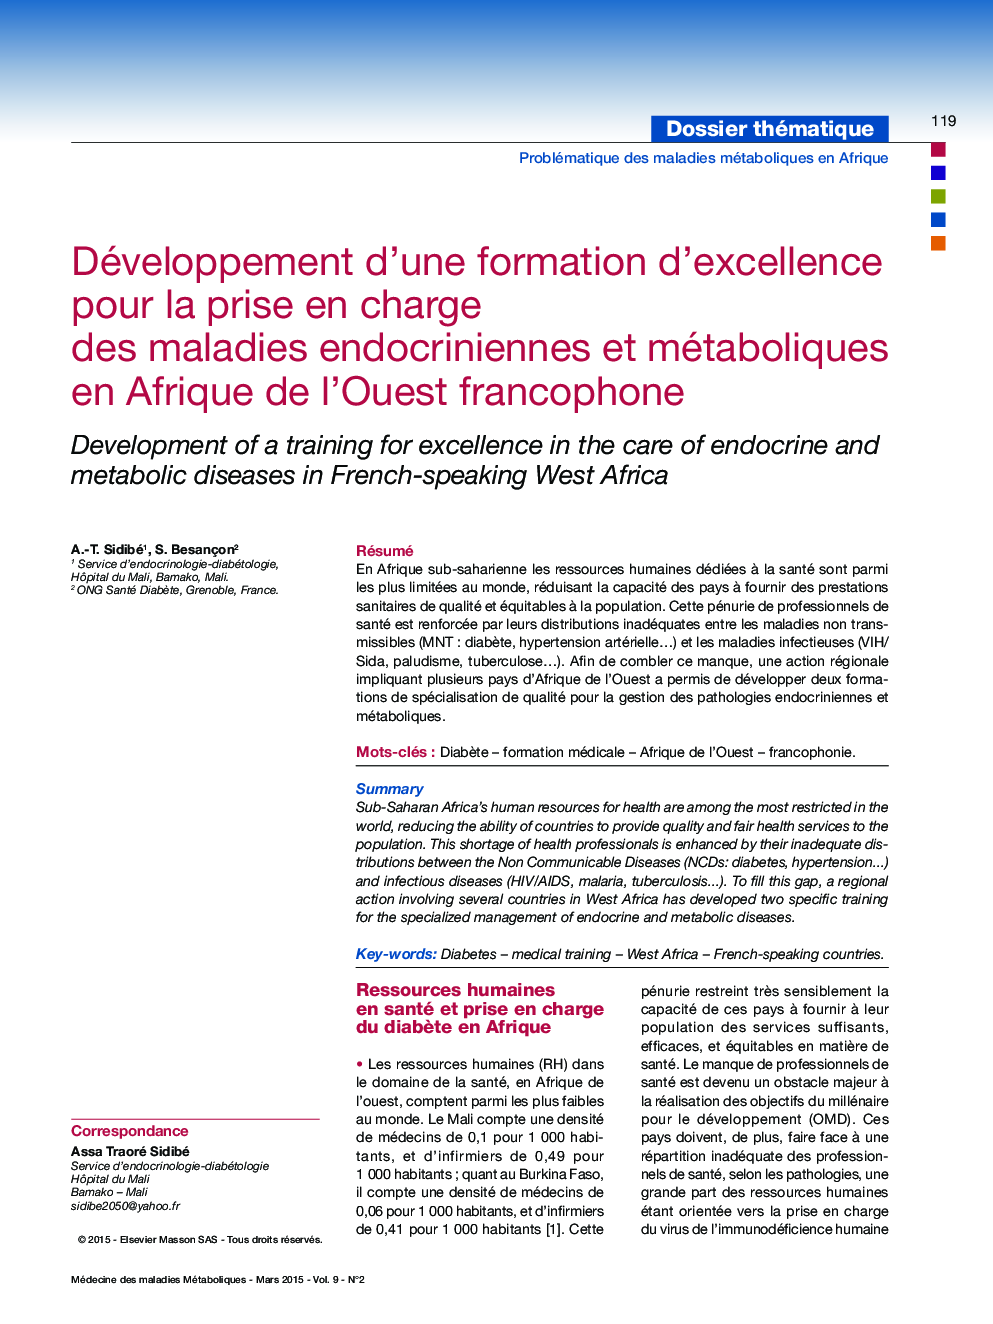 Développement d'une formation d'excellence pour la prise en charge des maladies endocriniennes et métaboliques en Afrique de l'Ouest francophone